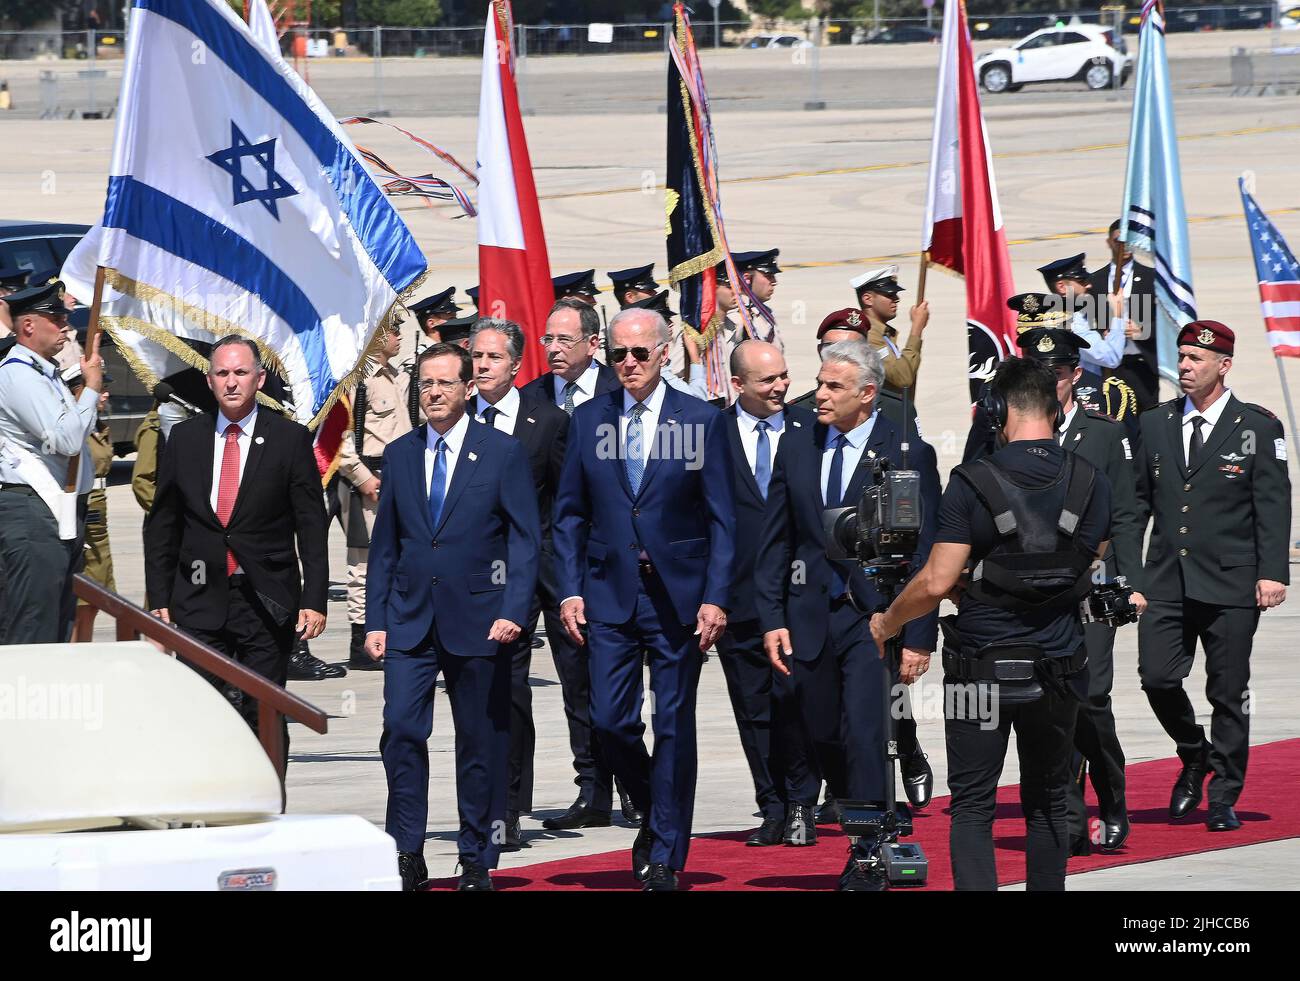 Tel Aviv, Israel. 13 July, 2022. U.S President Joe Biden, center, is welcomed on arrival by Israeli Prime Minister Yair Lapid, right, and Israeli President Isaac Herzog, left, at Ben Gurion Airport, July 13, 2022 in Tel Aviv, Israel. Stock Photo